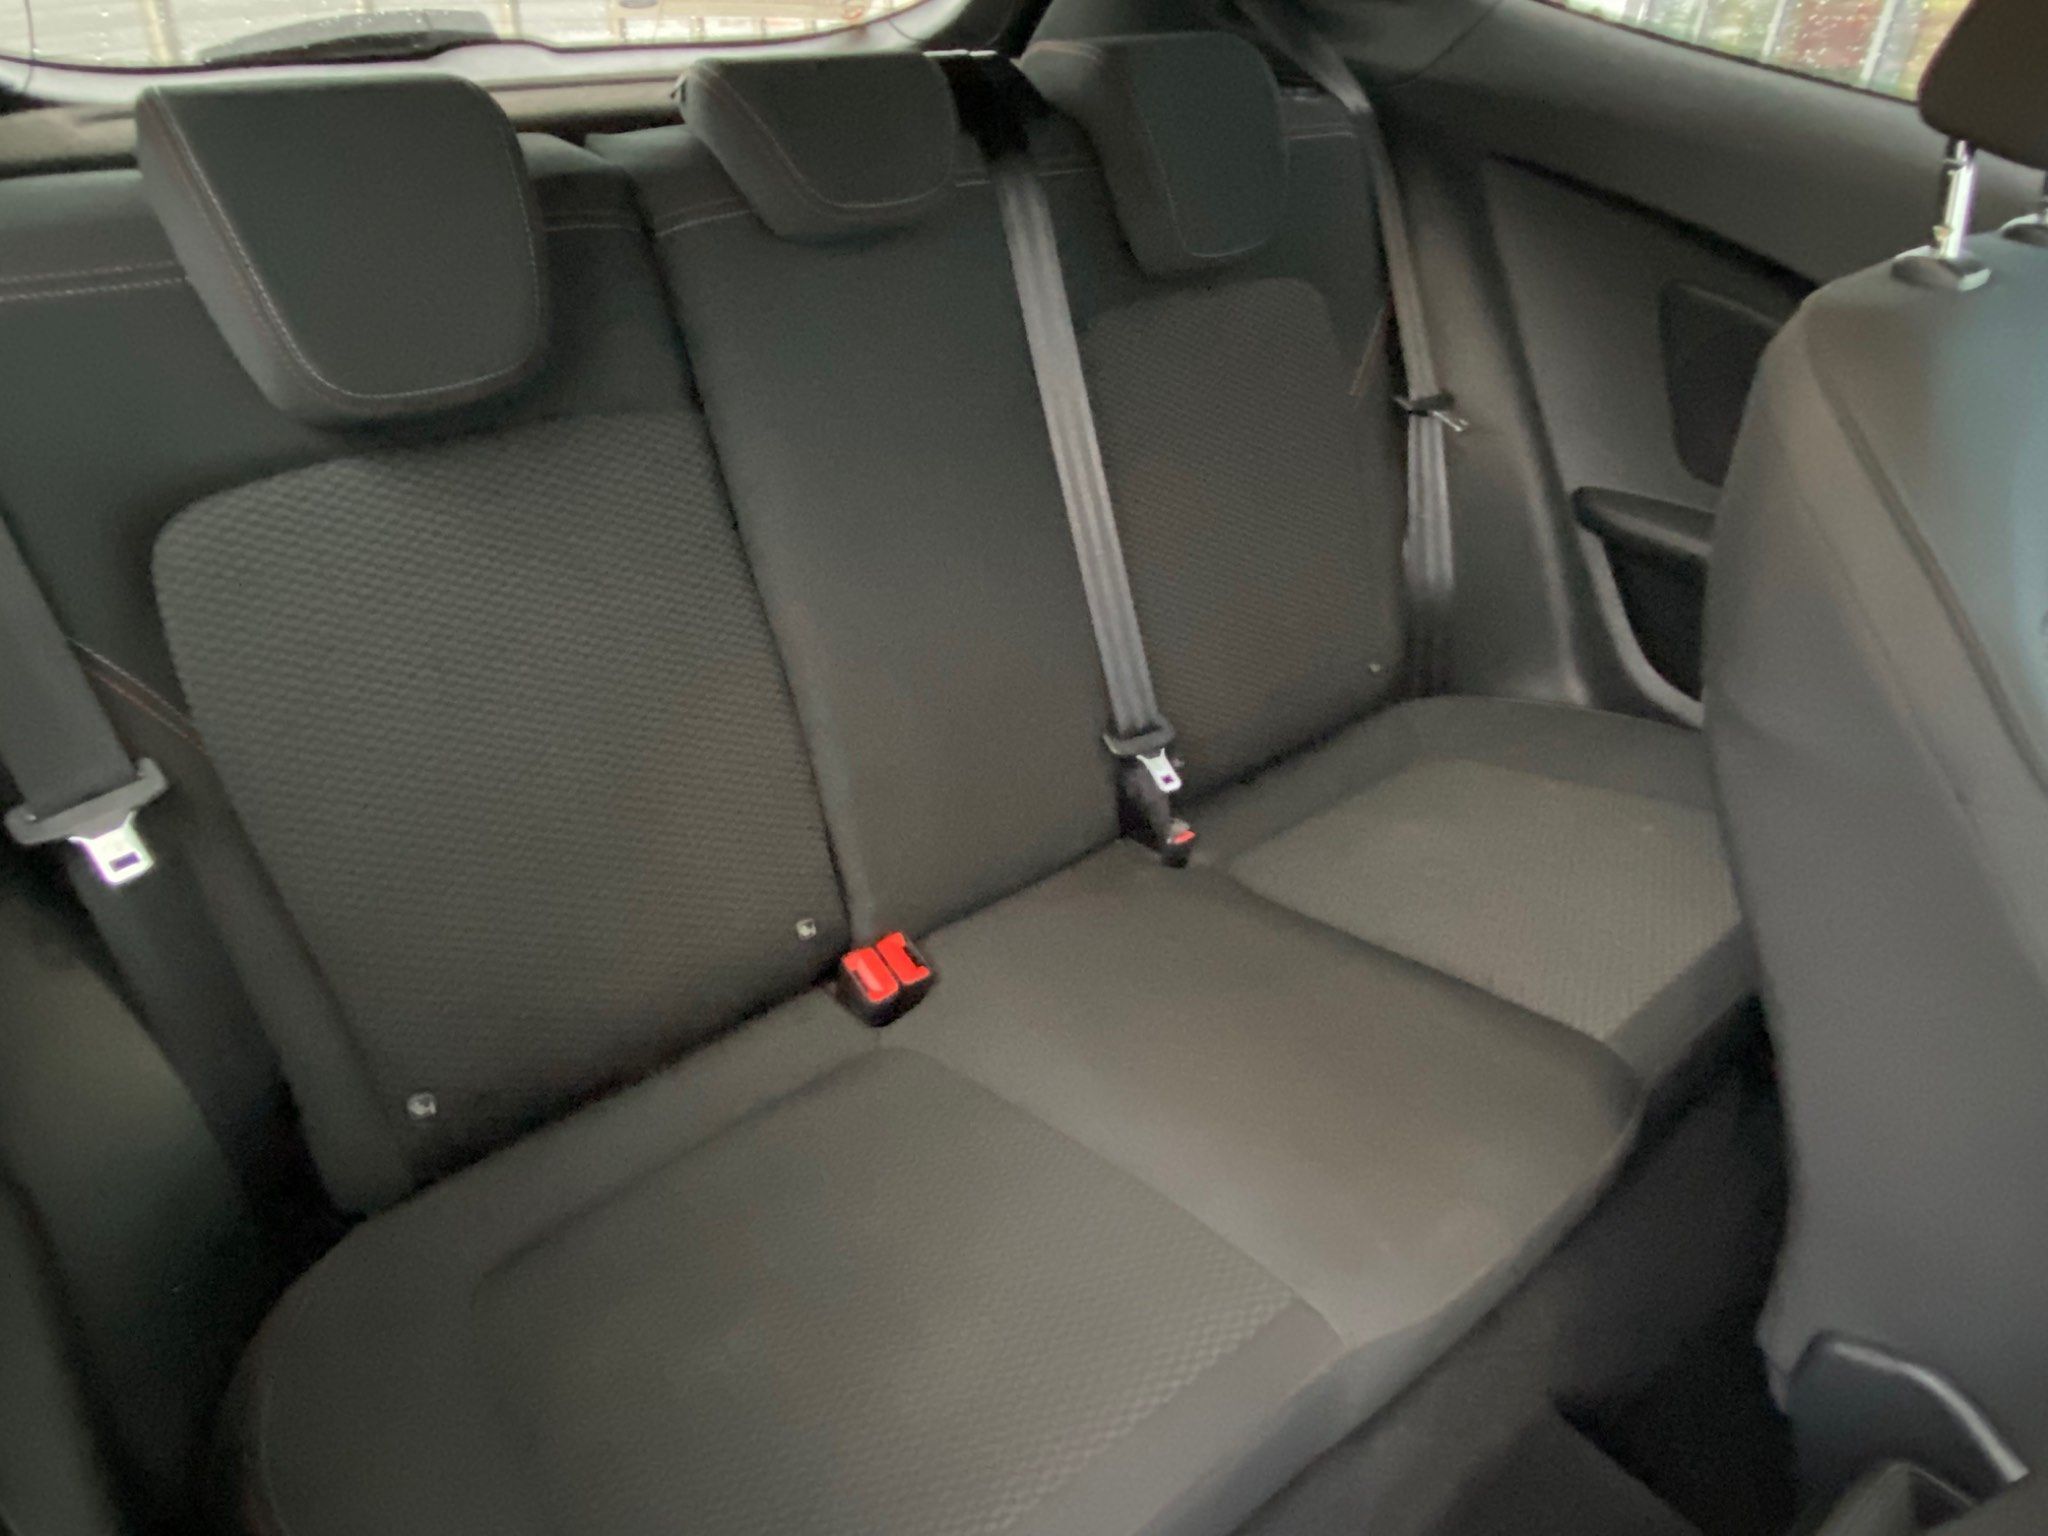 2018 Ford Fiesta EcoBoost ST-Line full